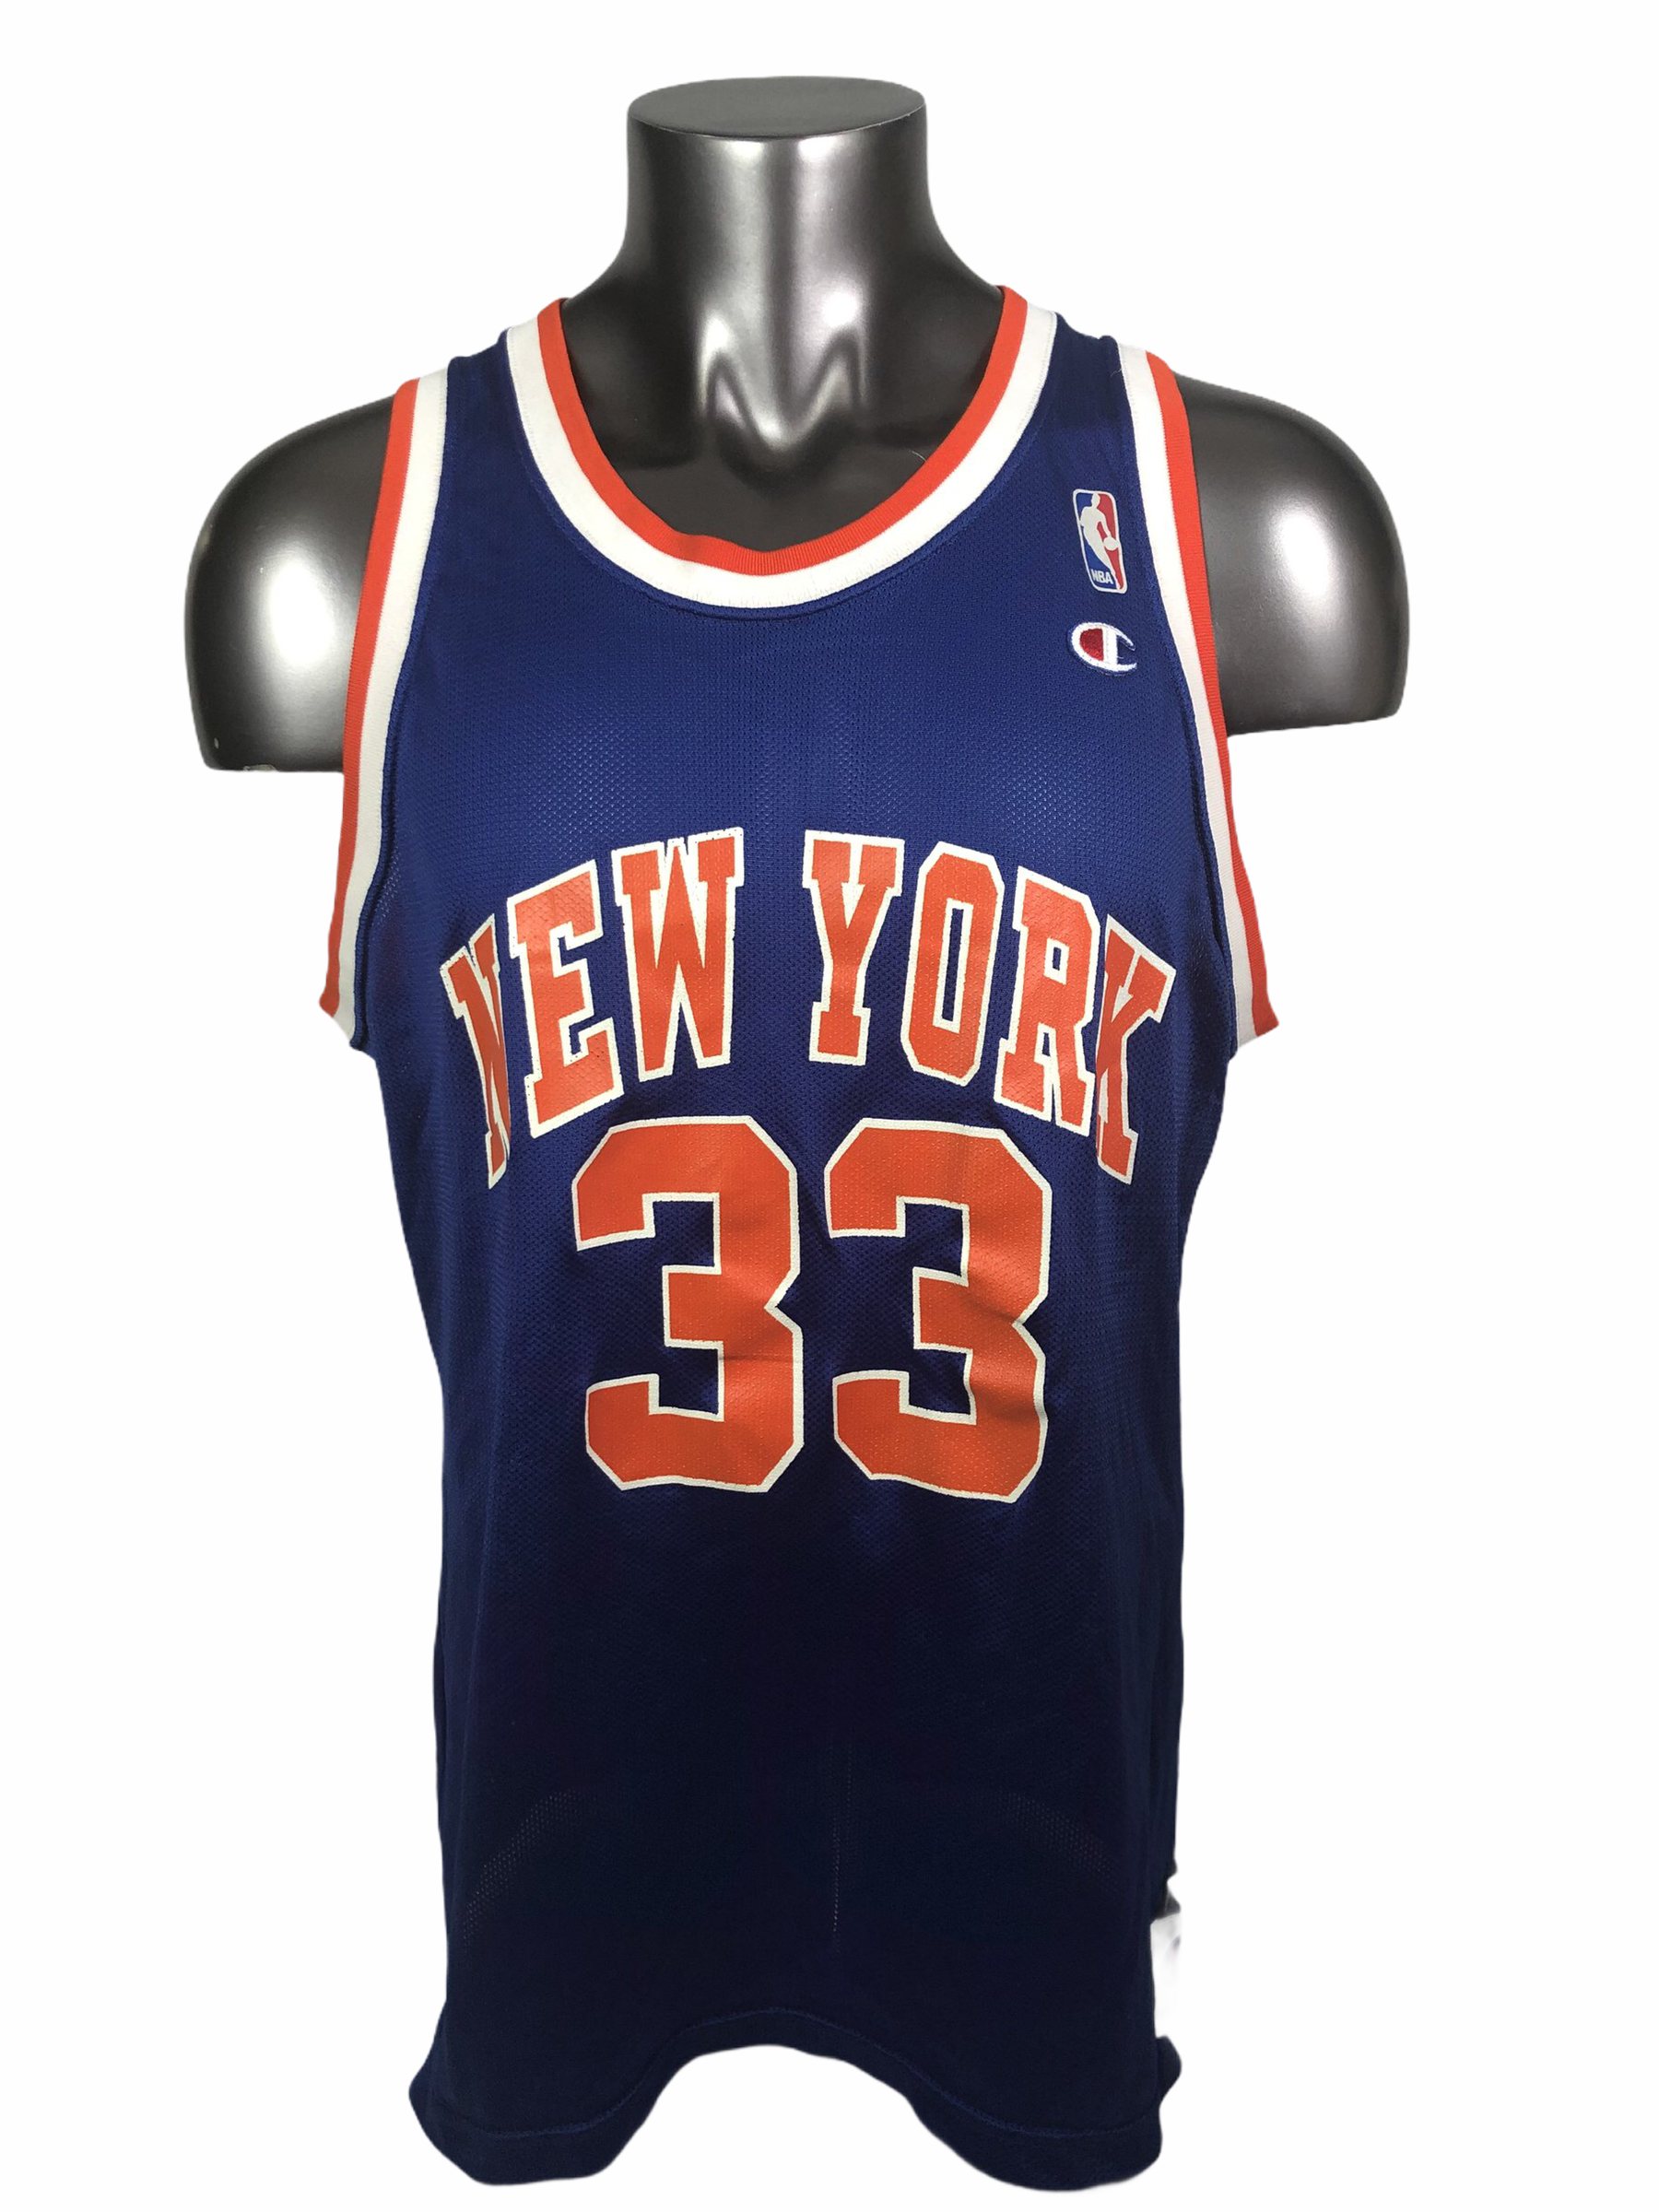 New York Knicks 48 Size NBA Jerseys for sale